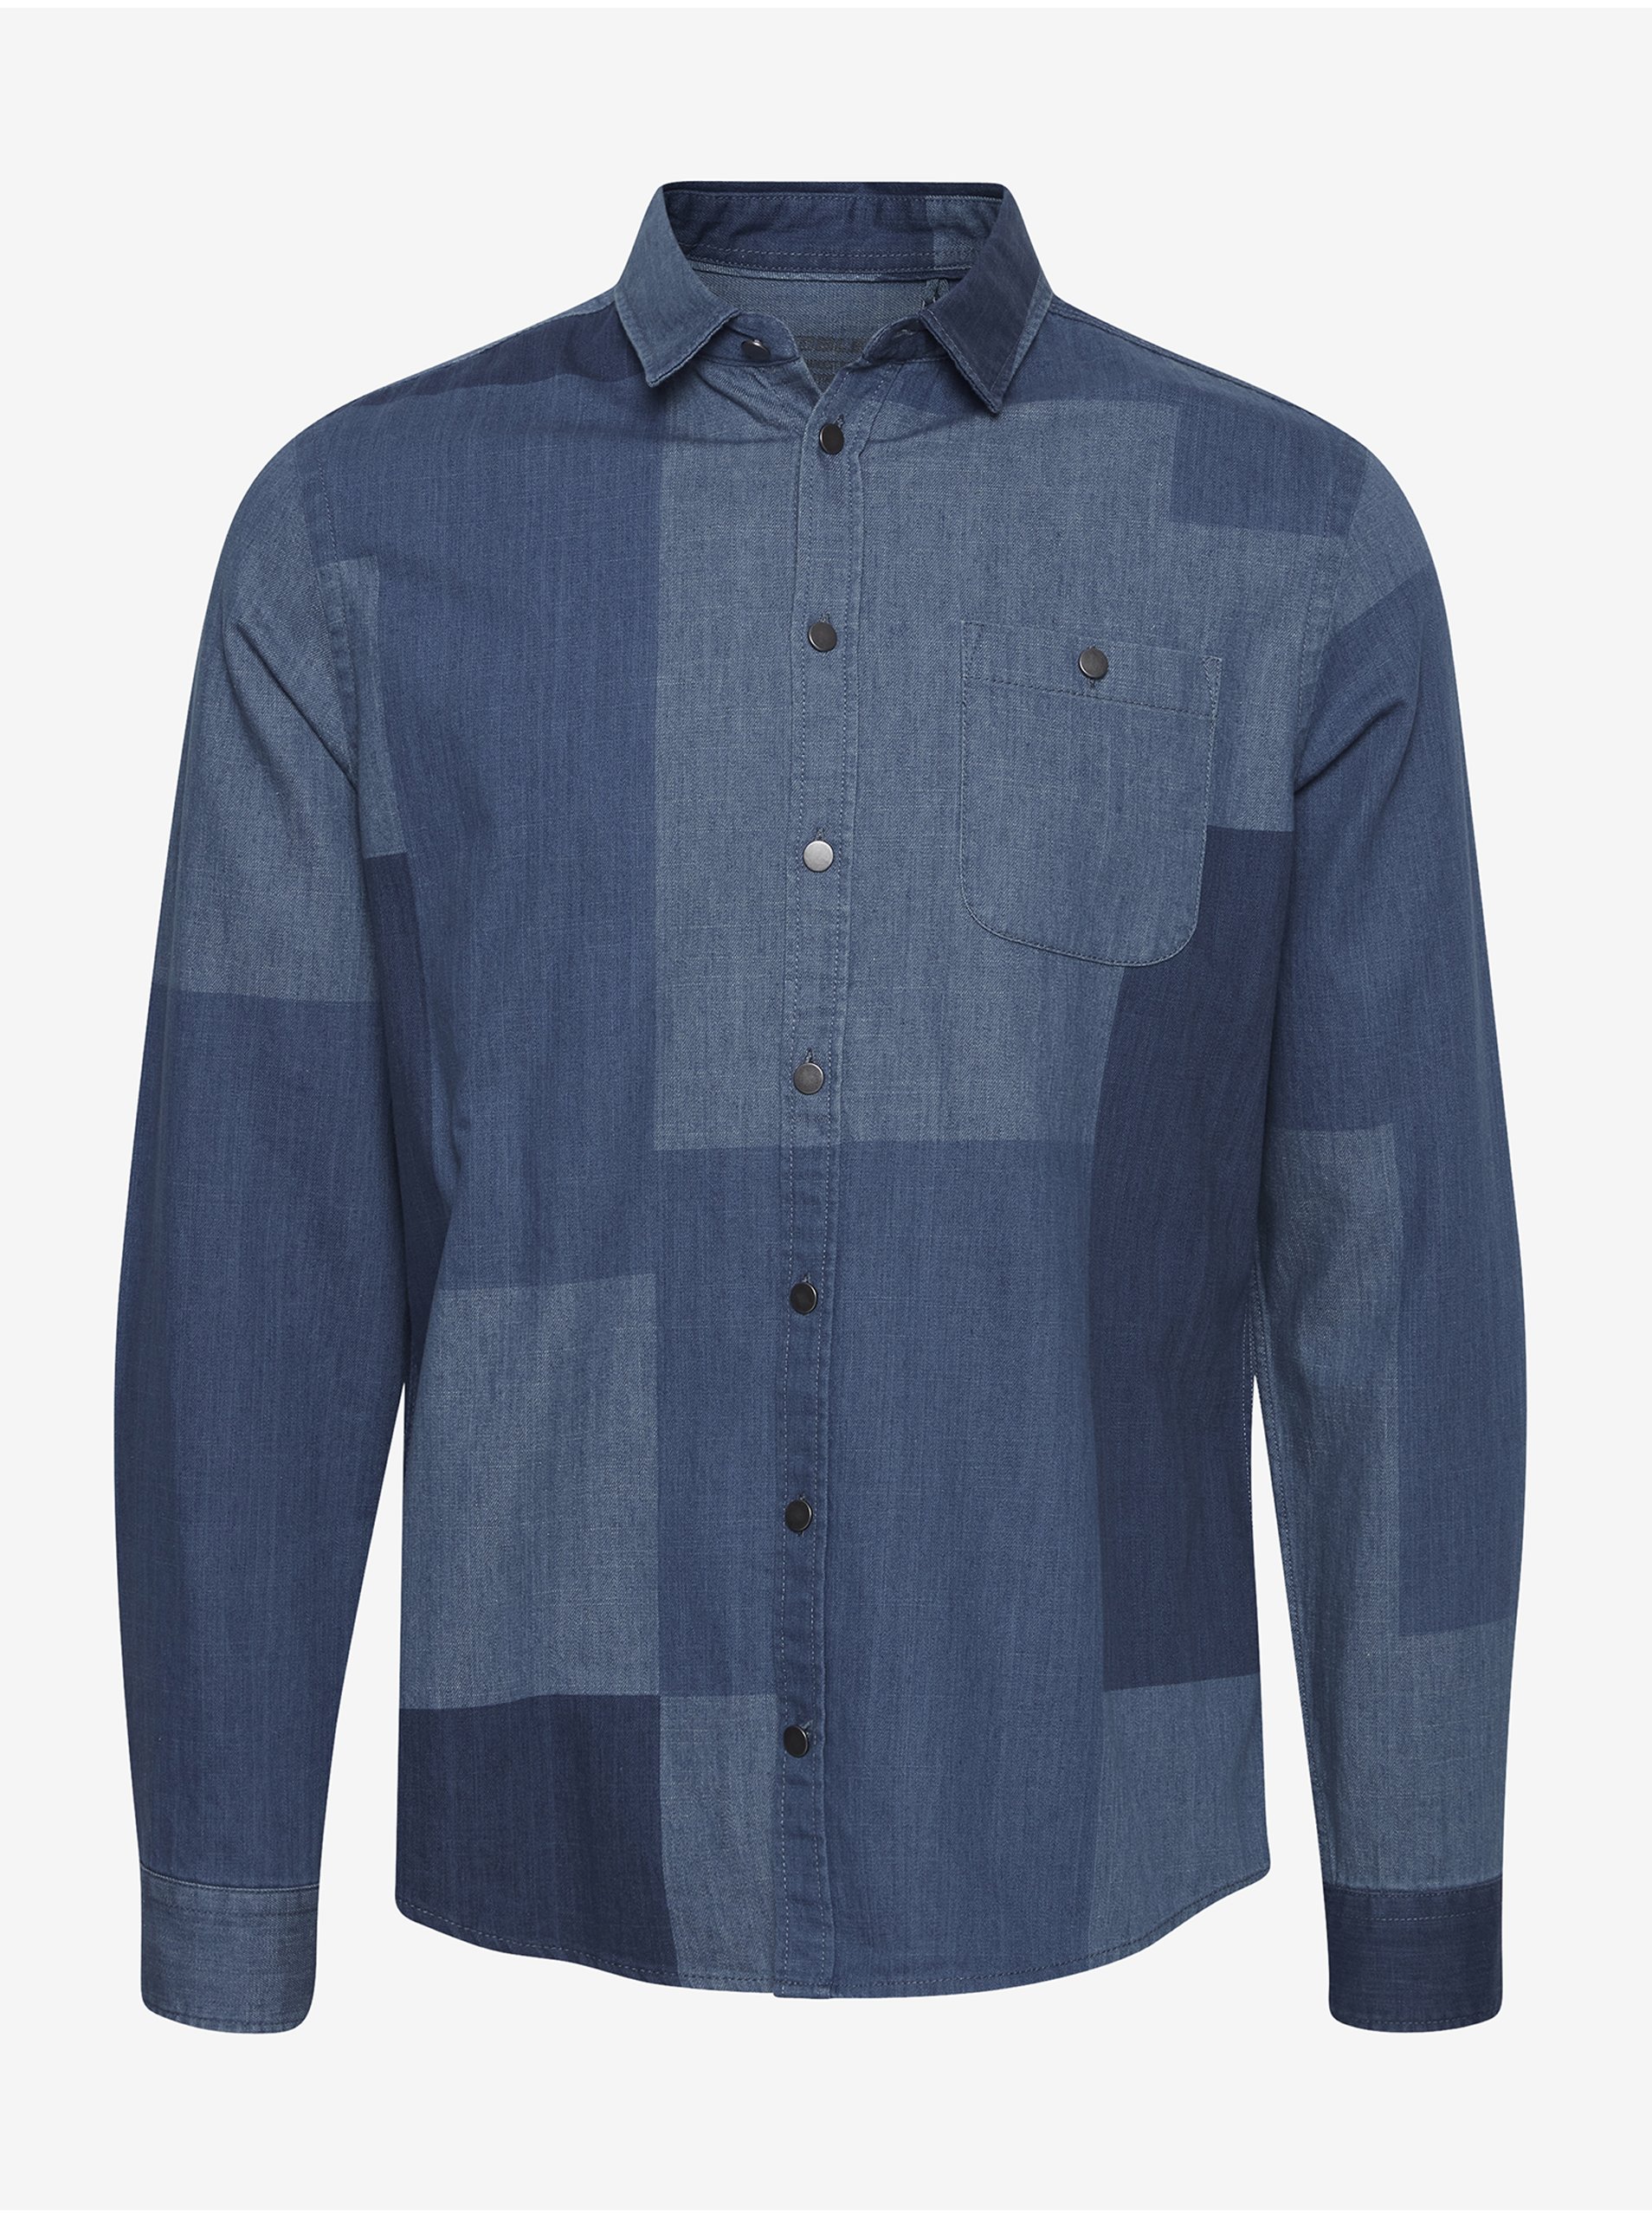 E-shop Modrá rifľová vzorovaná košeľa Blend Patchwork